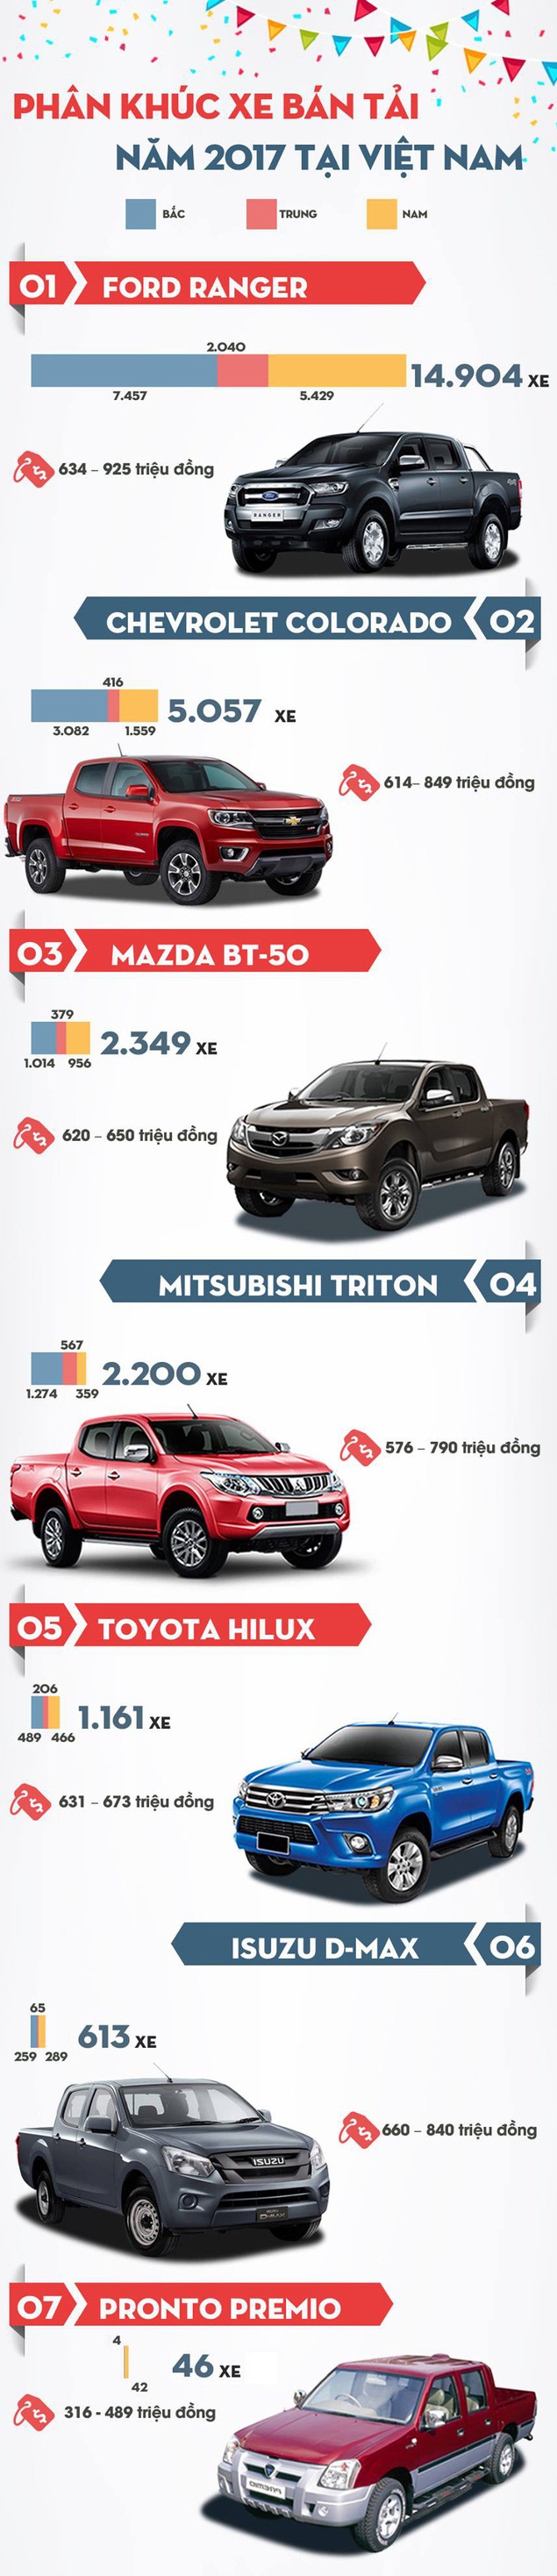 Chi tiết doanh số từng xe bán tải tại thị trường Việt Nam năm 2017.